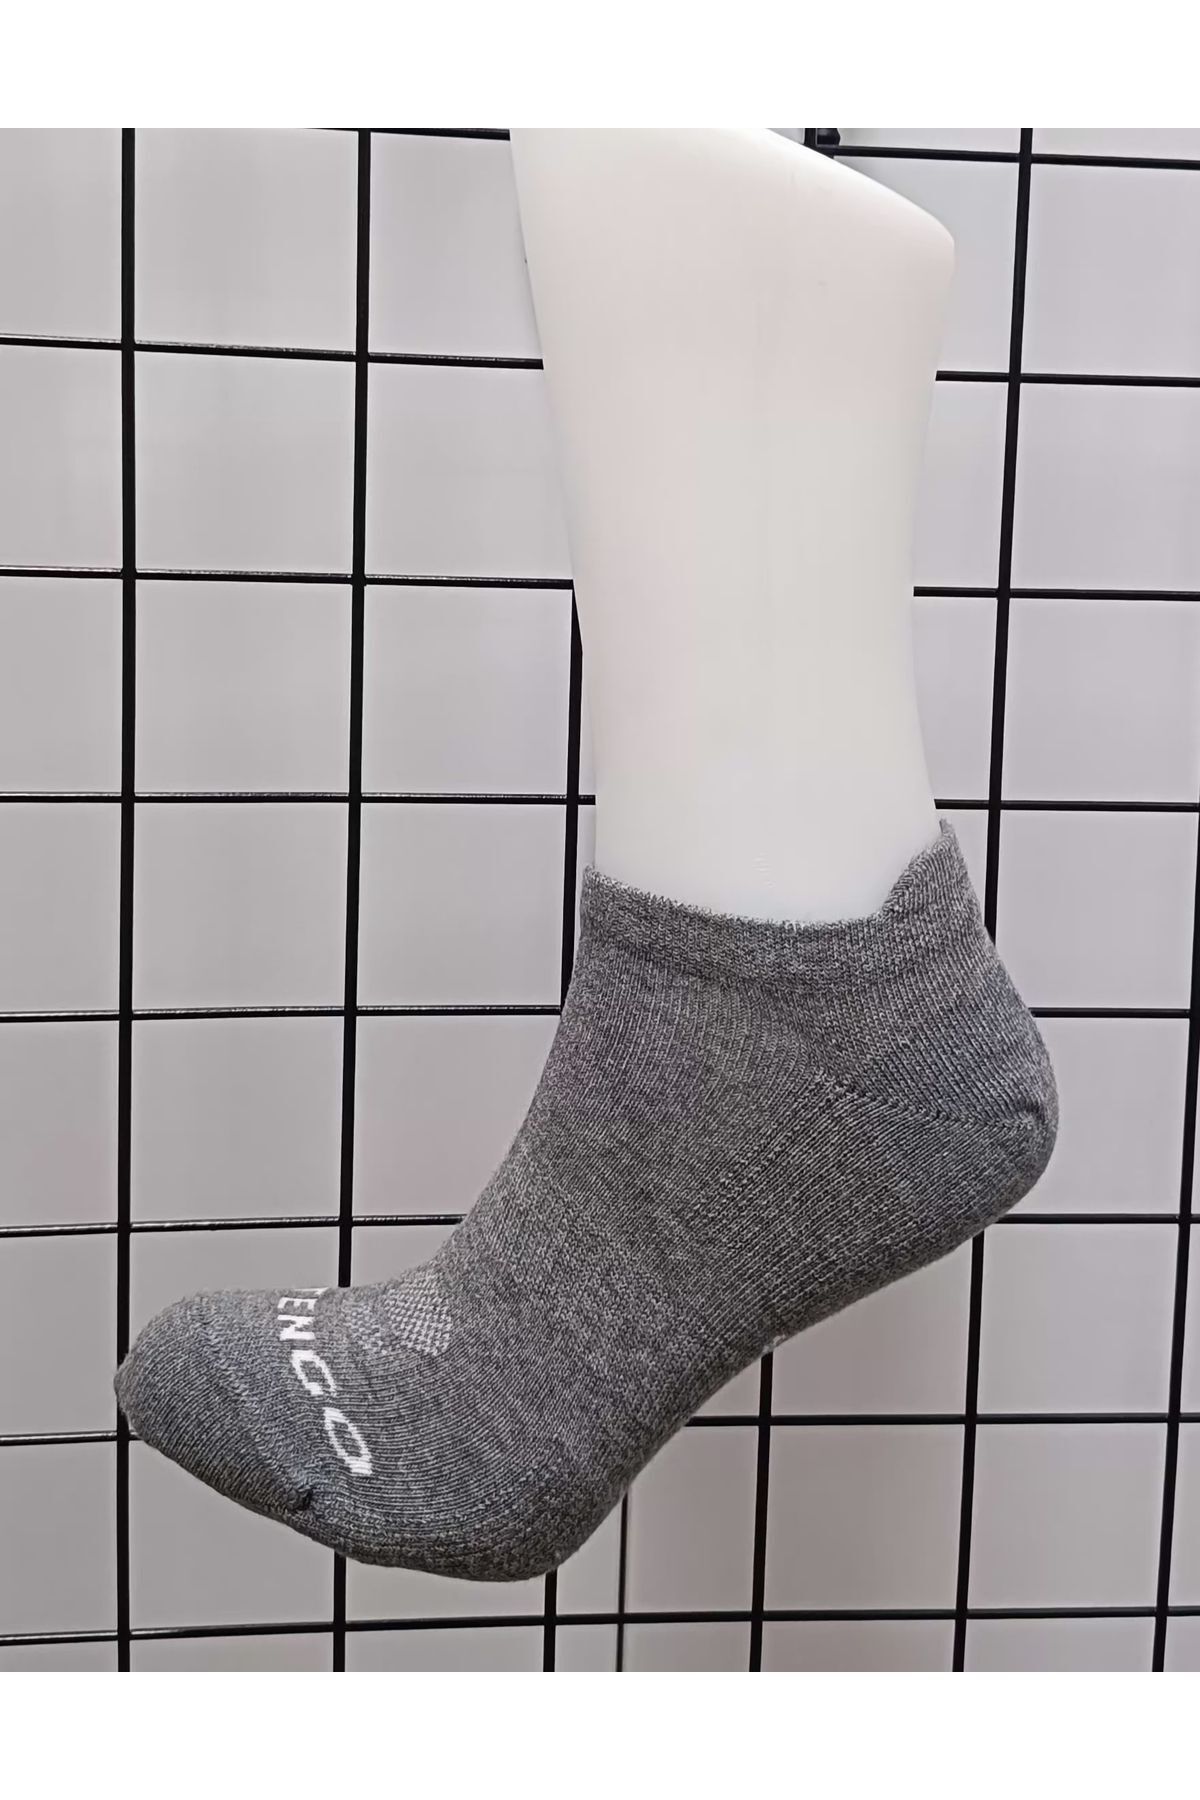 Decathlon Tenis Çorabı Kısa Konç Unisex 3çift Rs 160